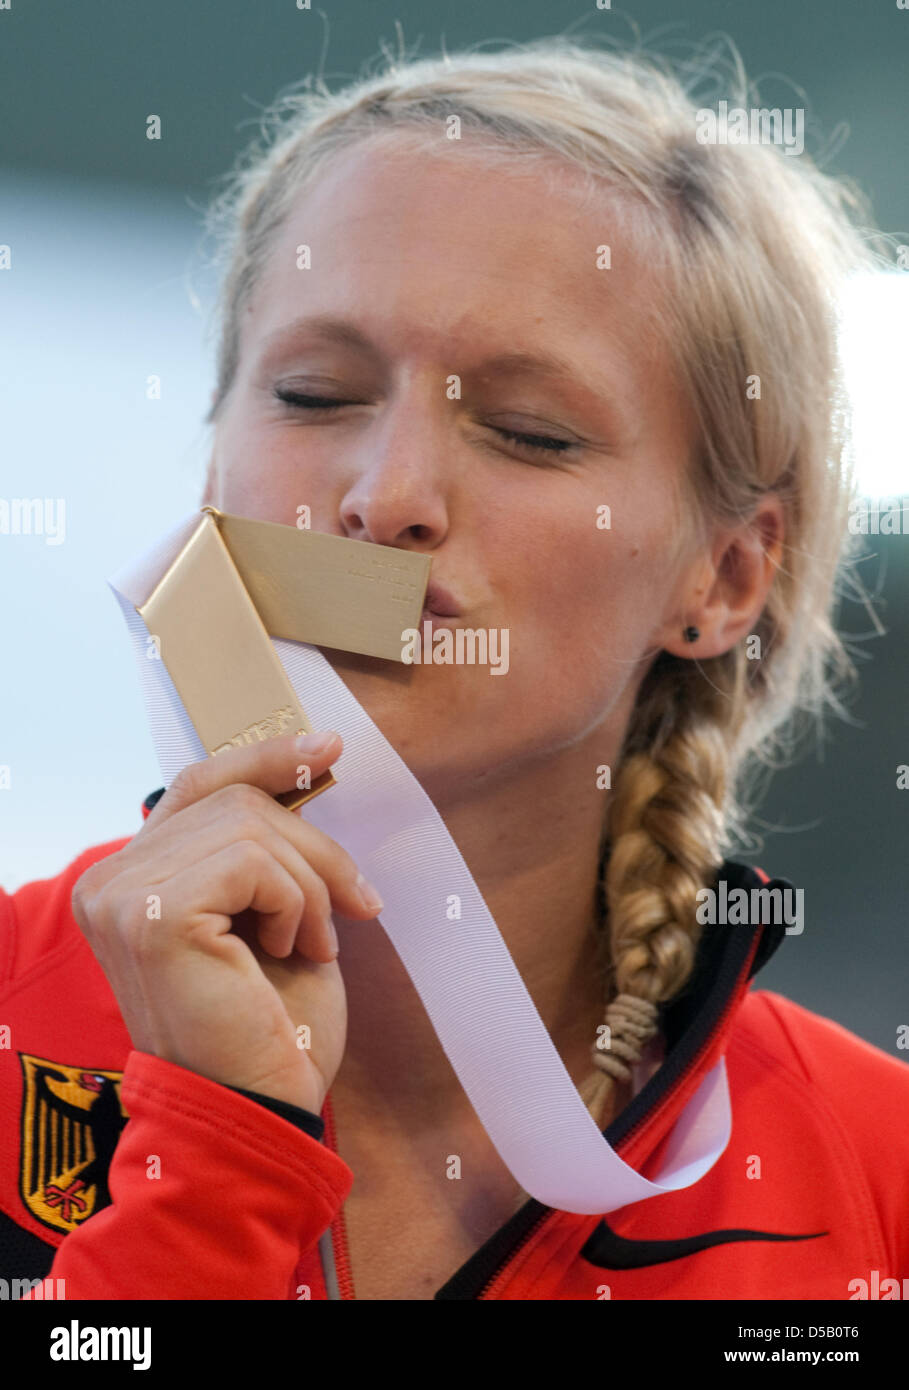 Le médaillé d'or de sprints allemande Verena Sailer embrasse sa médaille pour sa victoire dans le sprint de 100 mètres à la cérémonie de remise des médailles de l'athlétisme au stade olympique Lluis Companys de Barcelone, Espagne, 30 juillet 2010. Photo : Bernd Thissen Banque D'Images